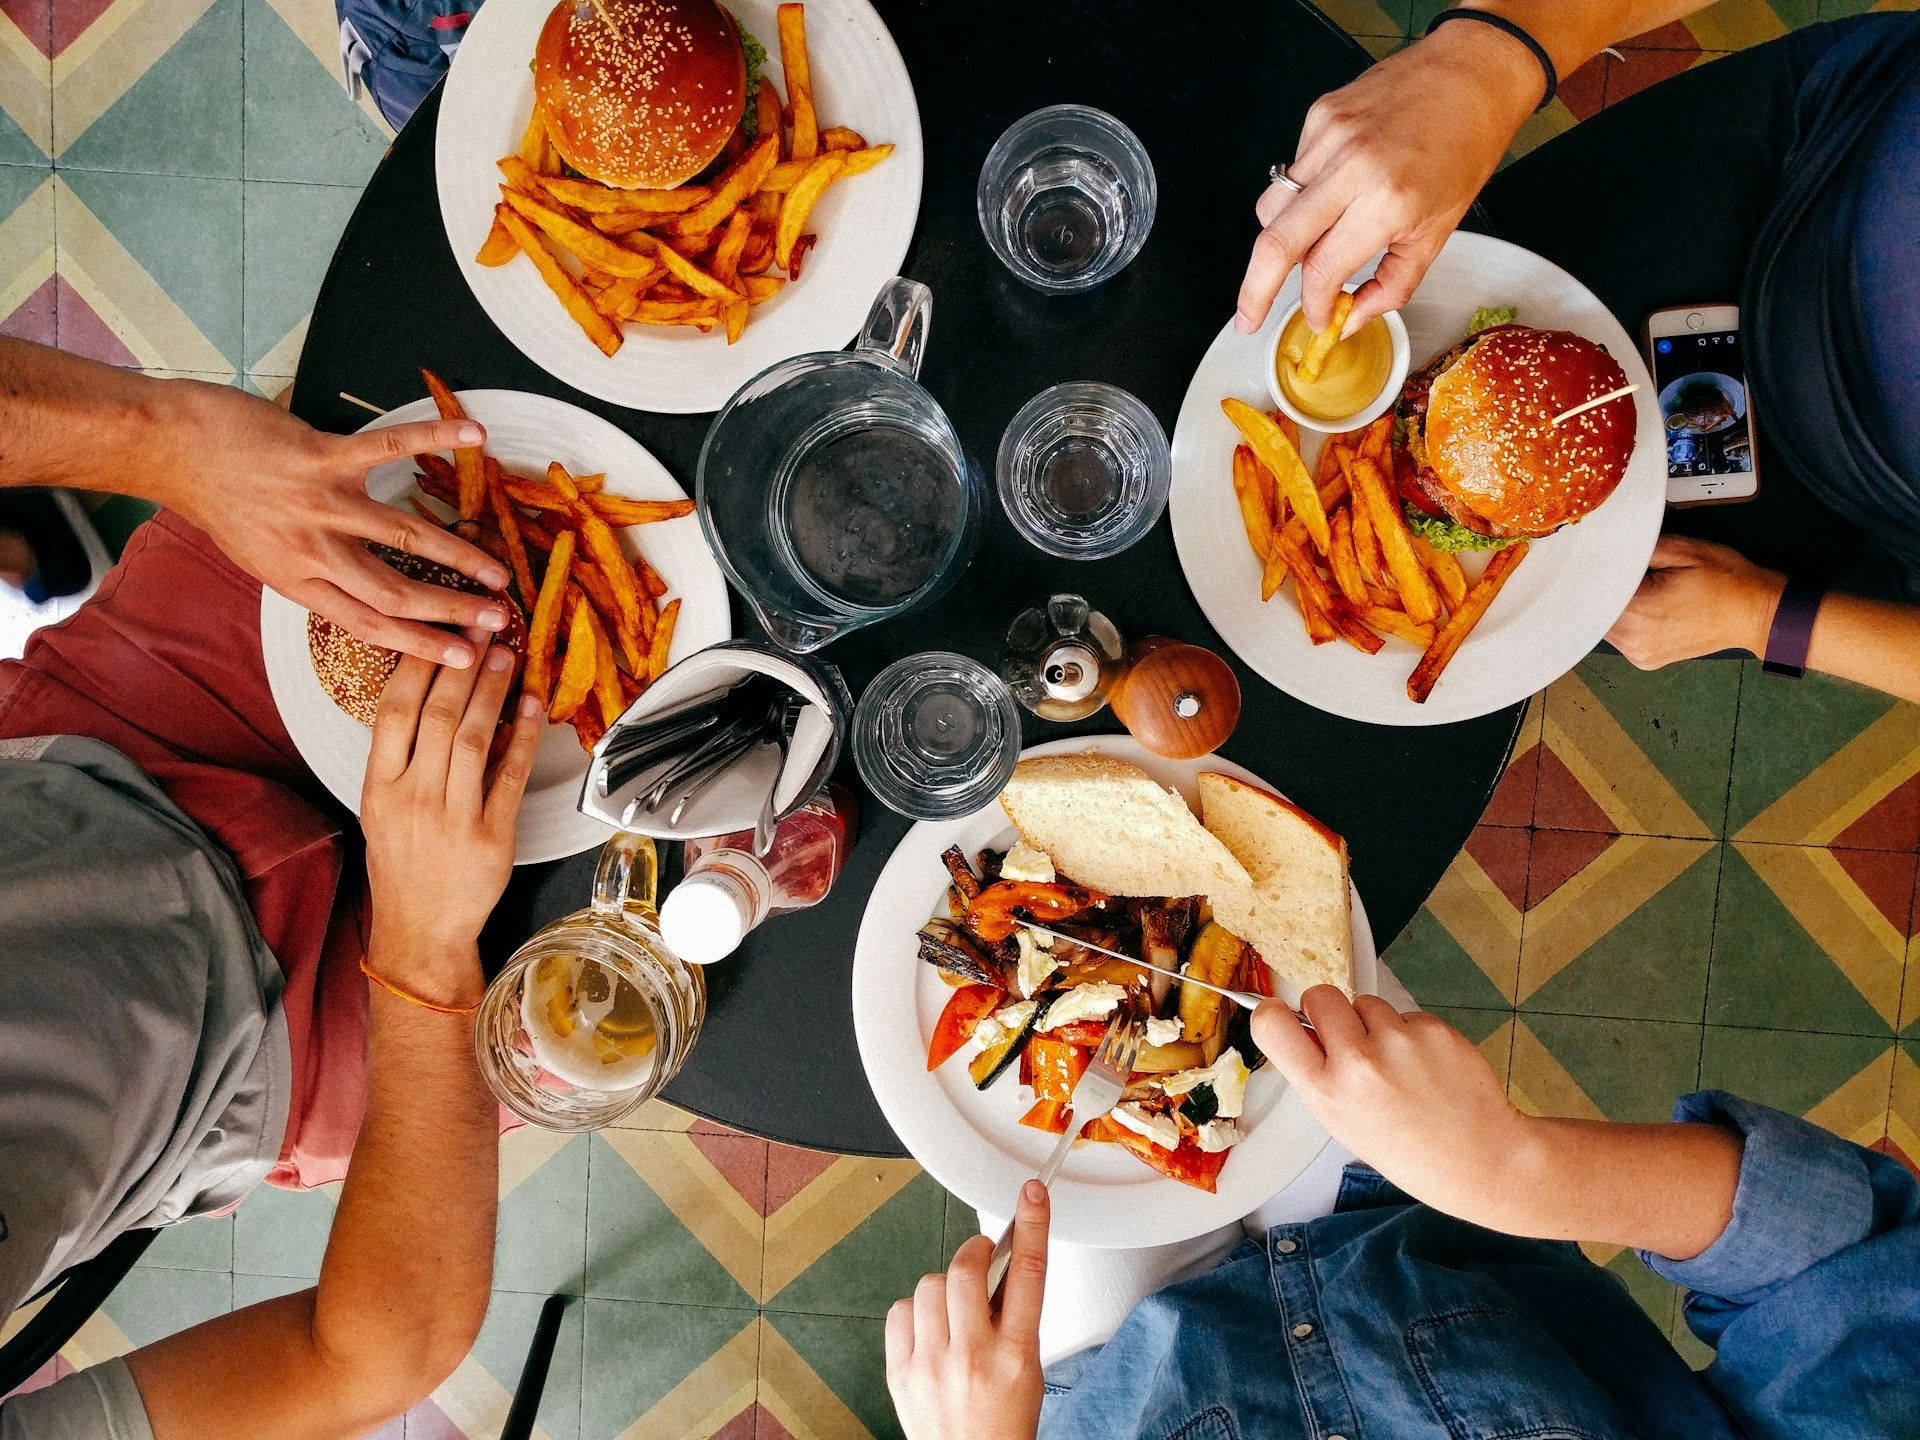 Некоторые блюда в заведениях превышают суточную норму калорий: какая любимая еда мешает похудению - Здоровье 24